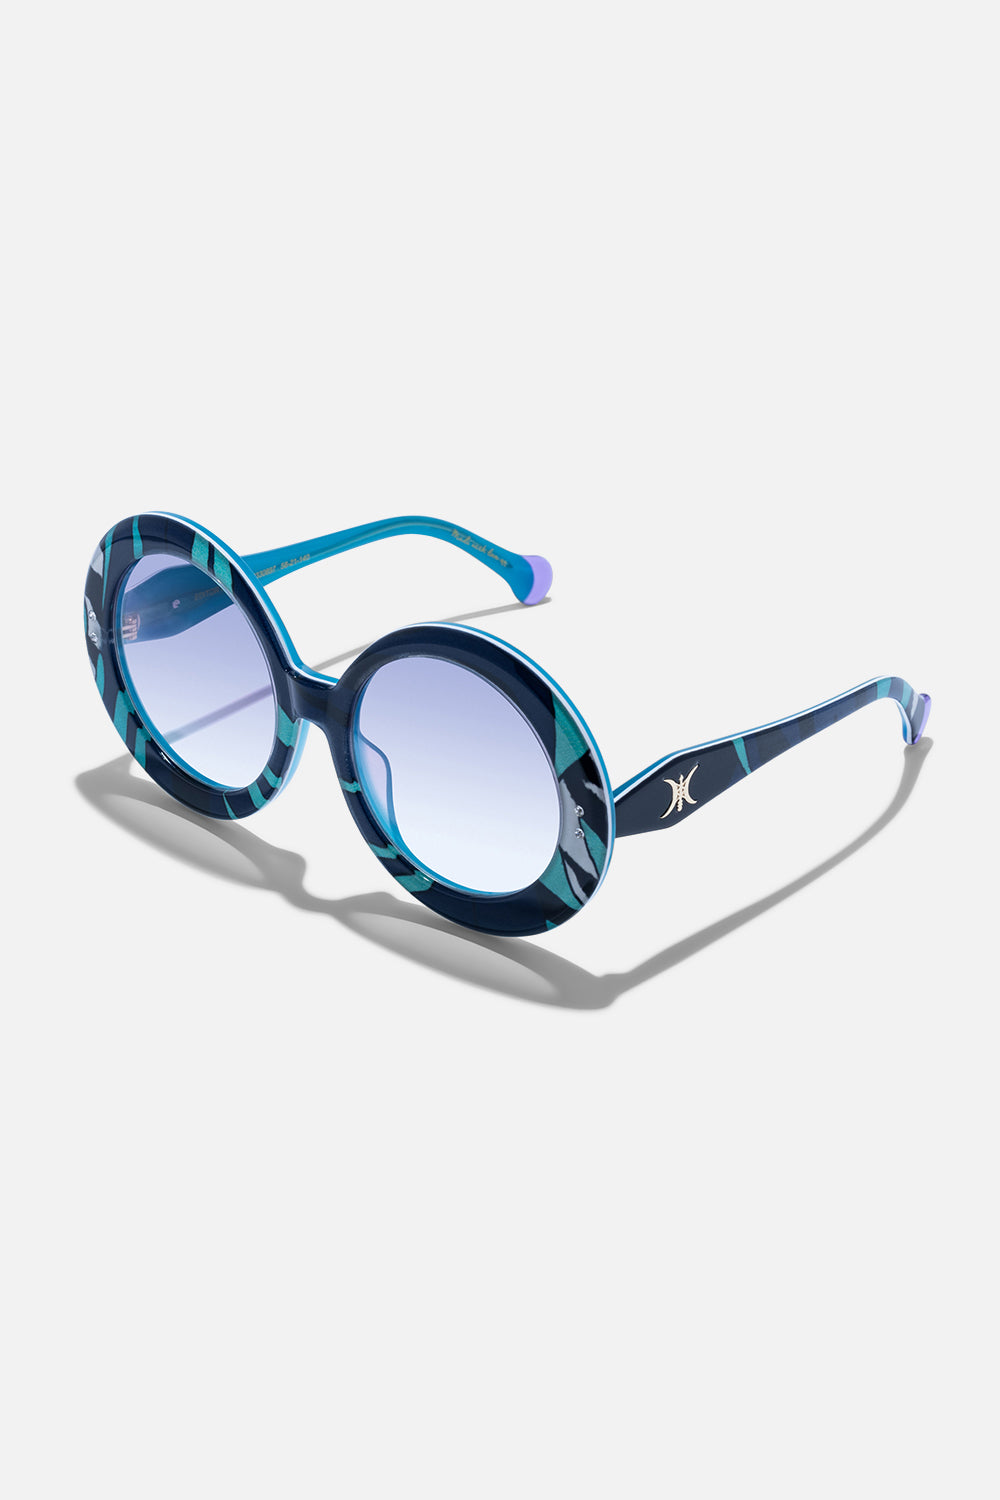 CAMILLA designer sunglasses in Vividly Venice print